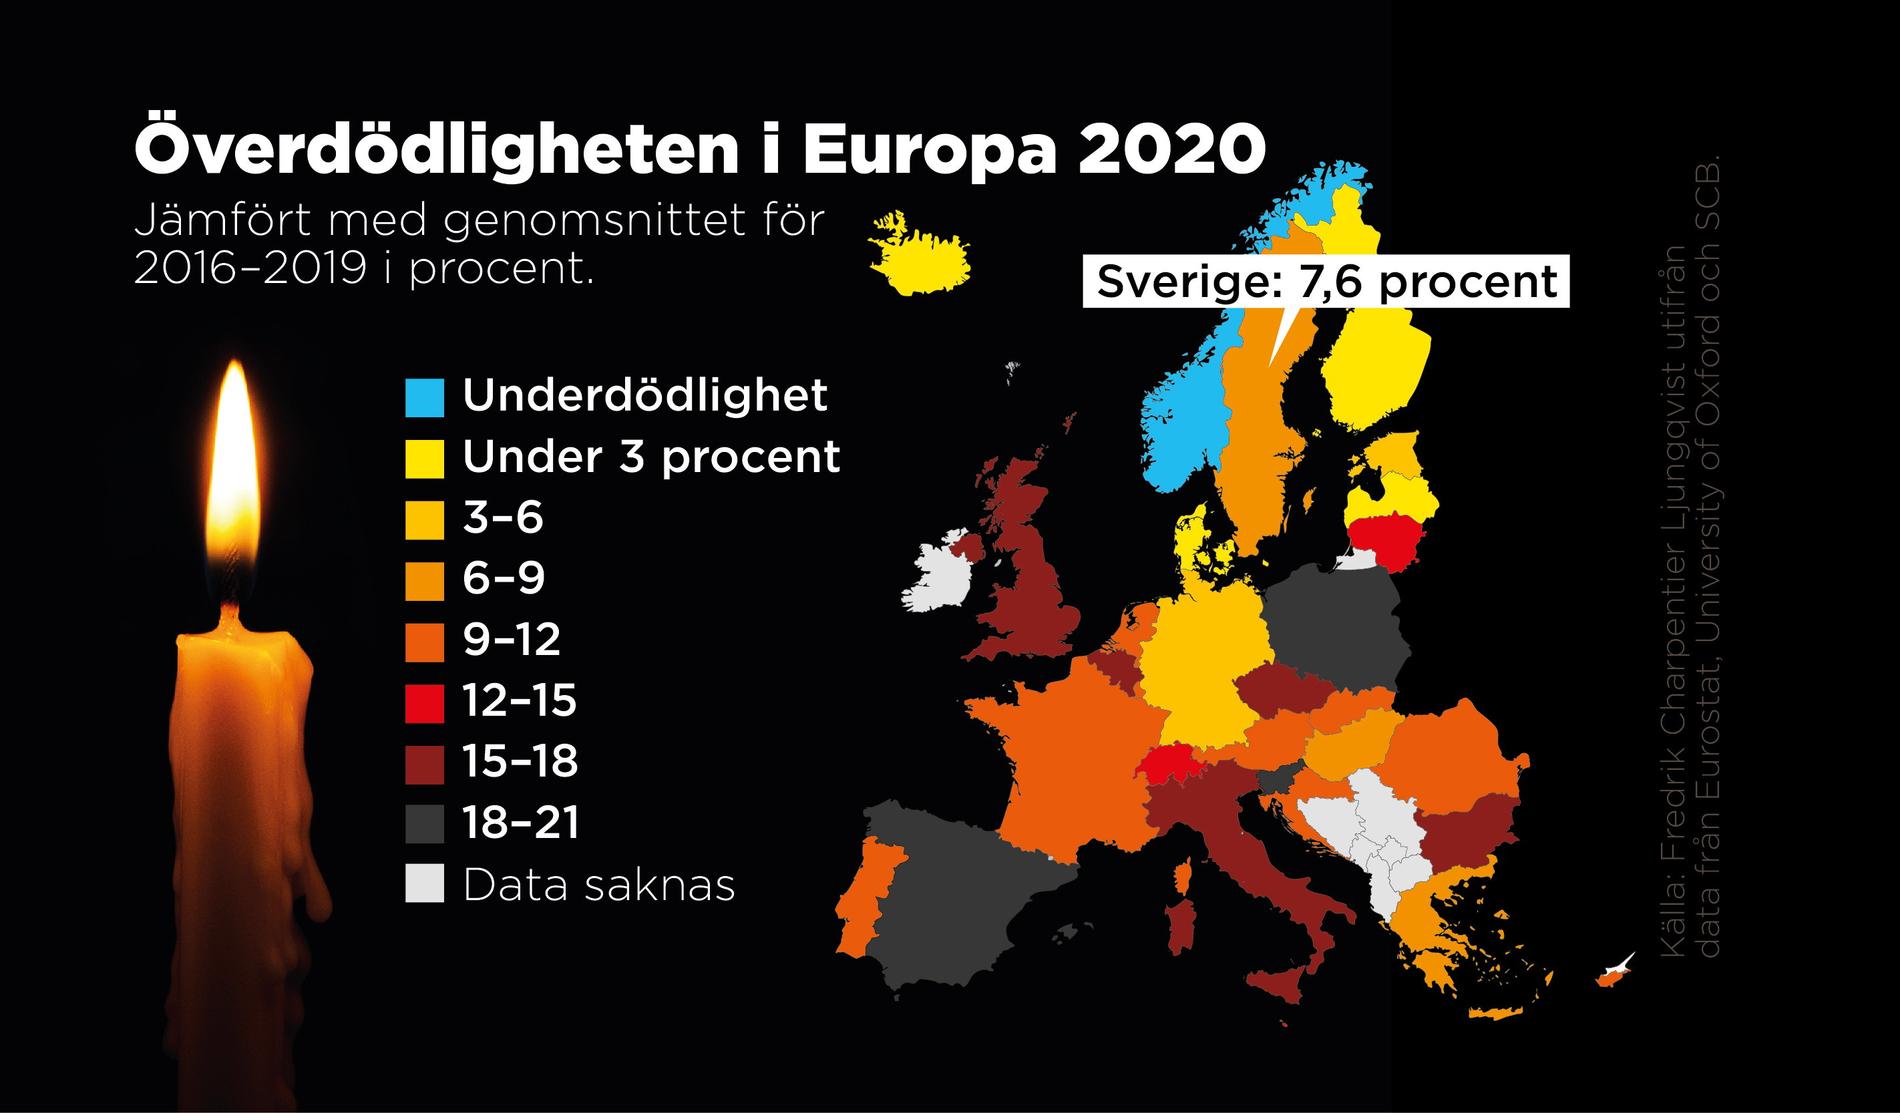 Ungefär två tredjedelar av Europas länder hade en högre överdödlighet än Sverige under 2020.